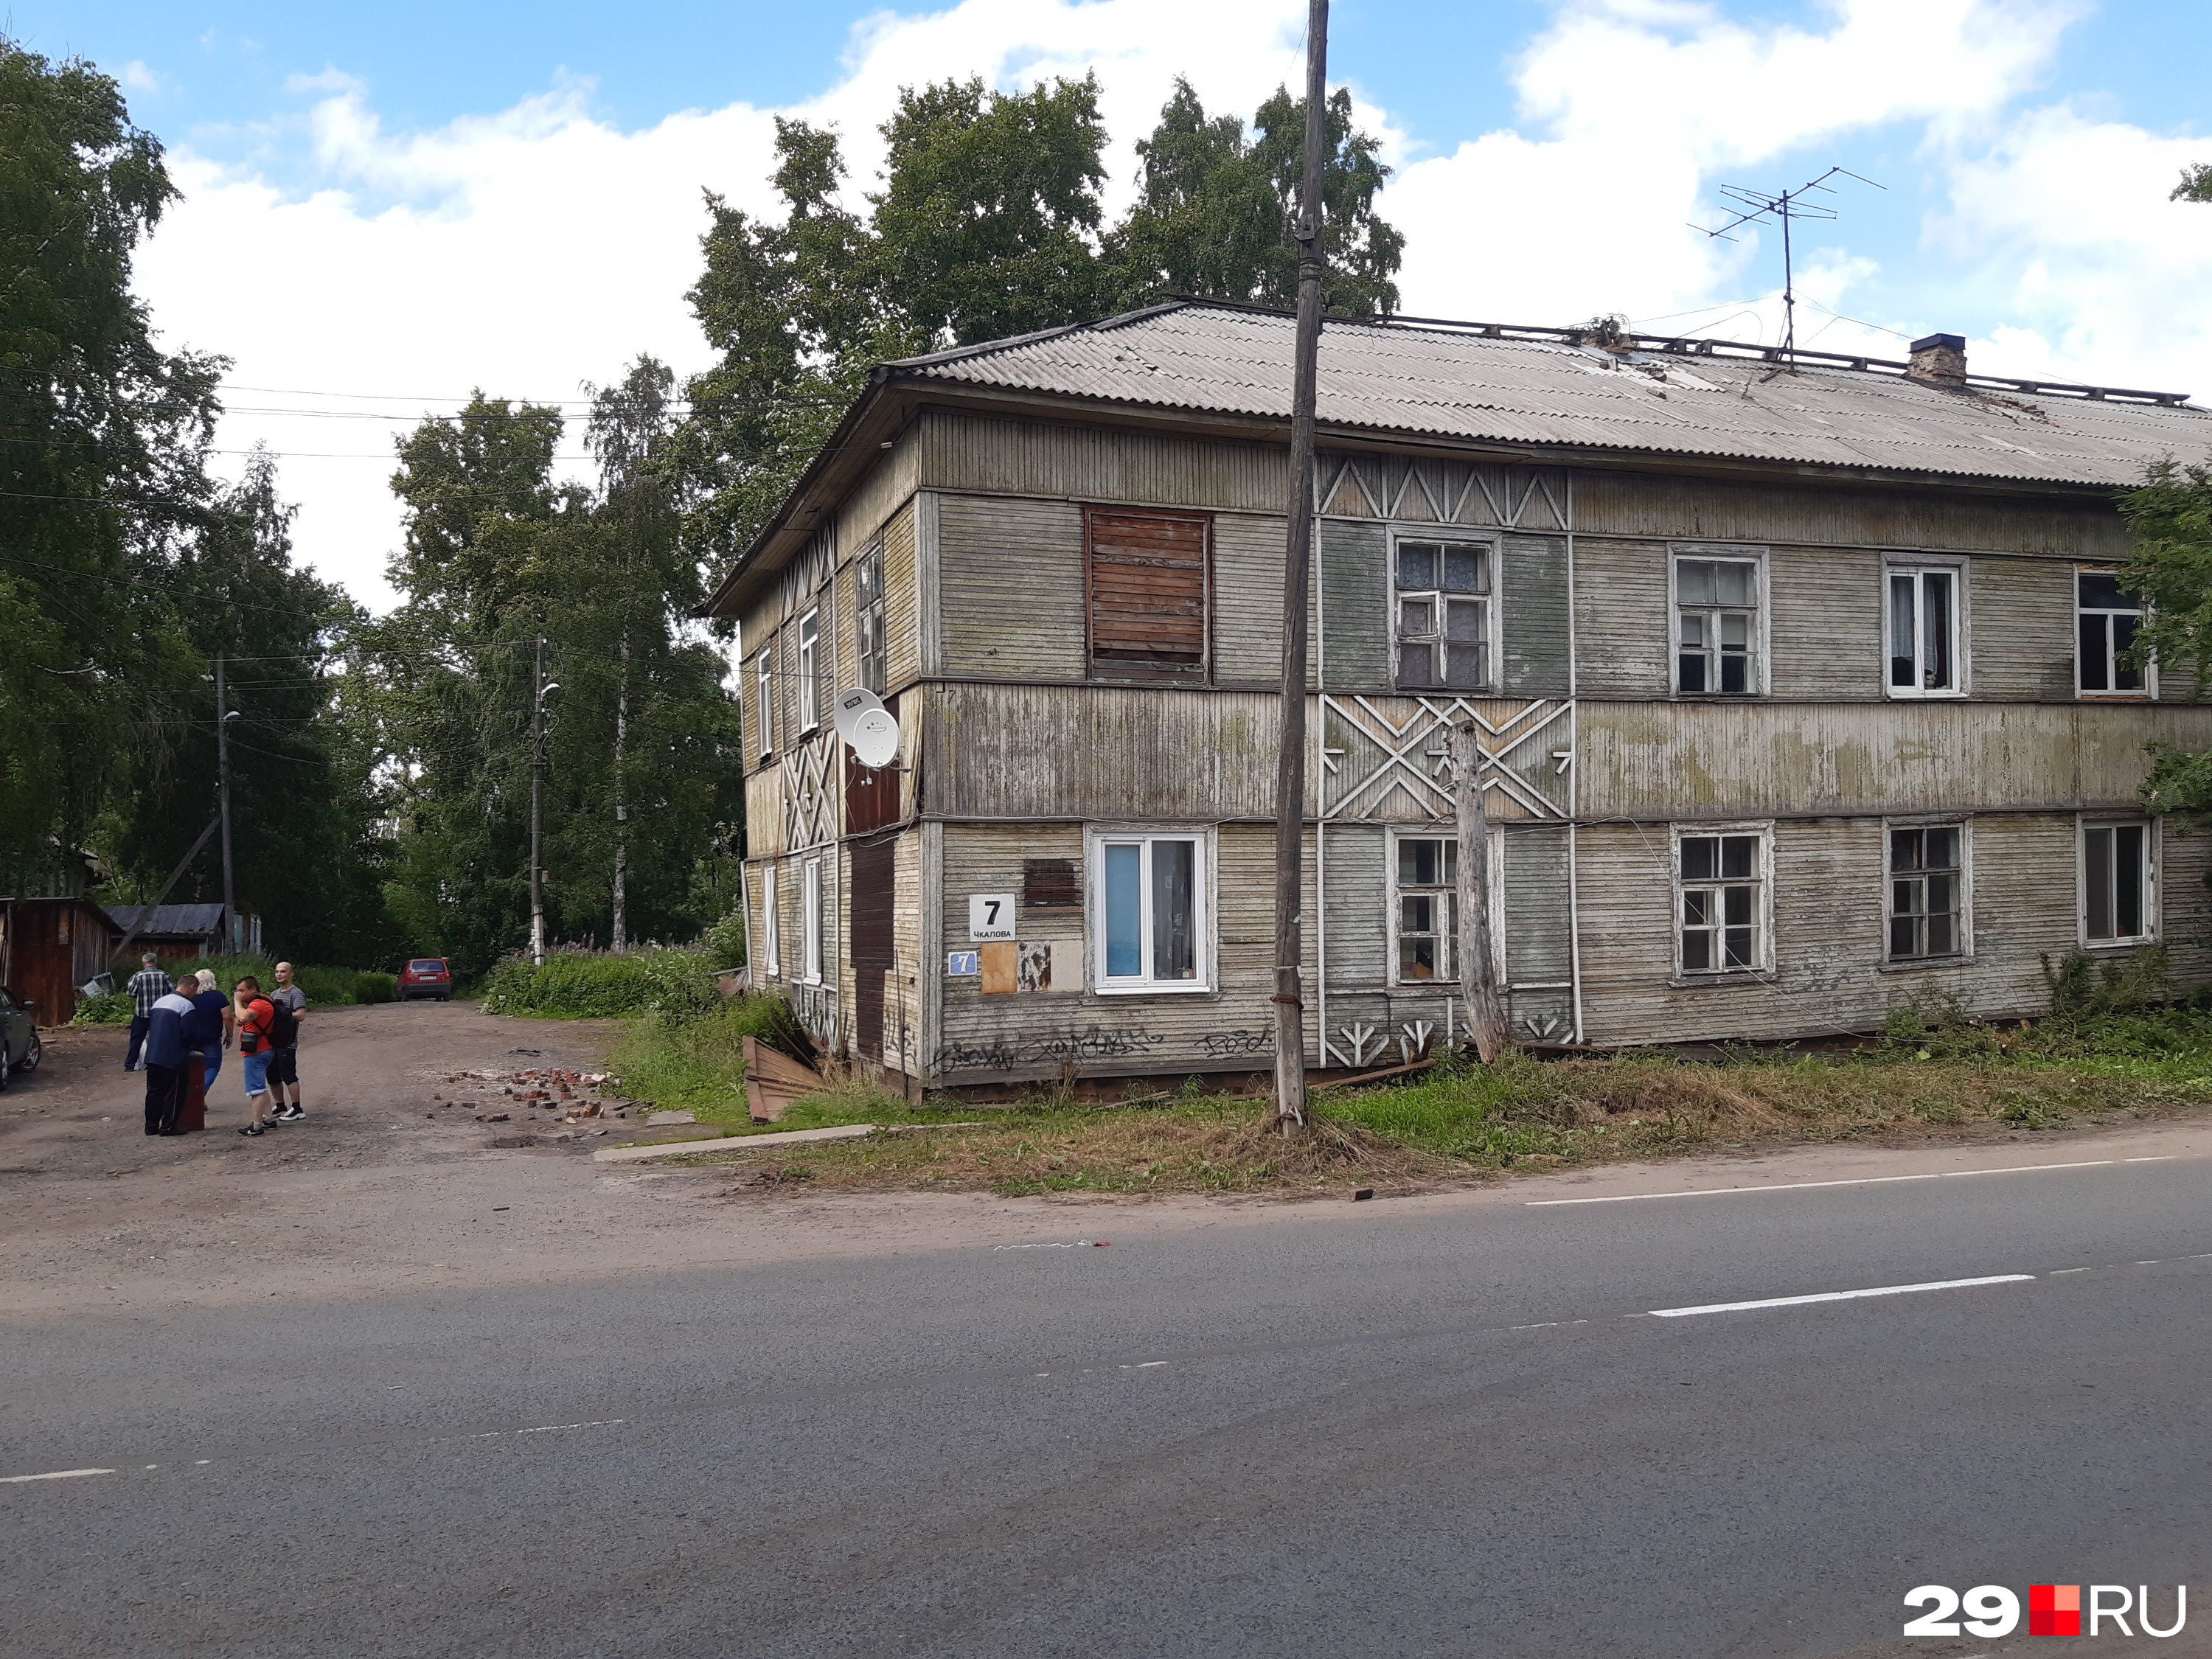 Деревянная двухэтажка на улице Чкалова, 7, тоже нежилая — она сошла со свай месяц назад, 22 июня